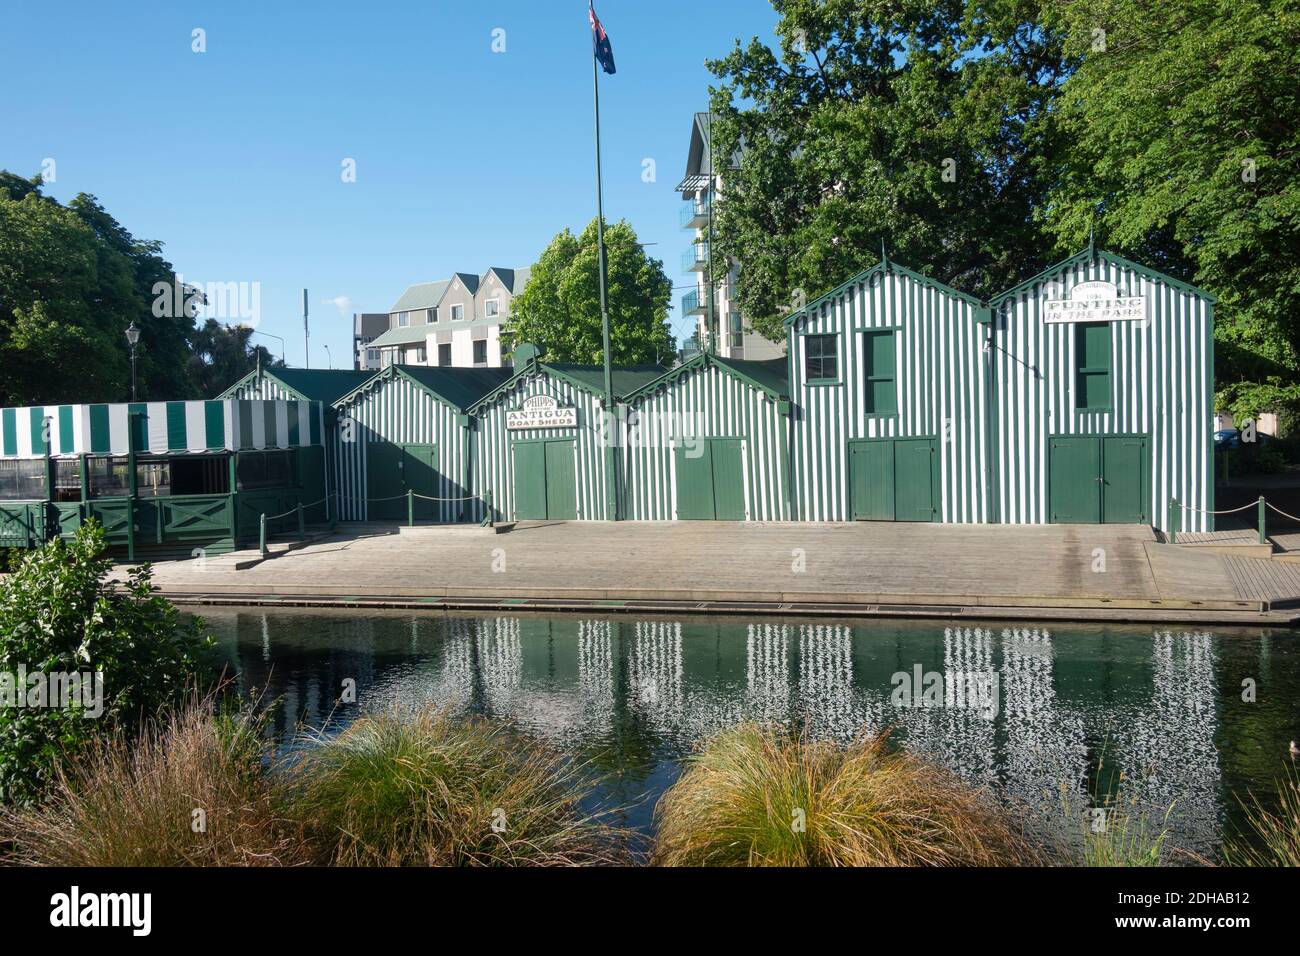 Christchurch Nuova Zelanda - Novembre 21 2020; chiuse le porte di fila di baracche verdi lungo e riflesse nel fiume Avon in città Foto Stock